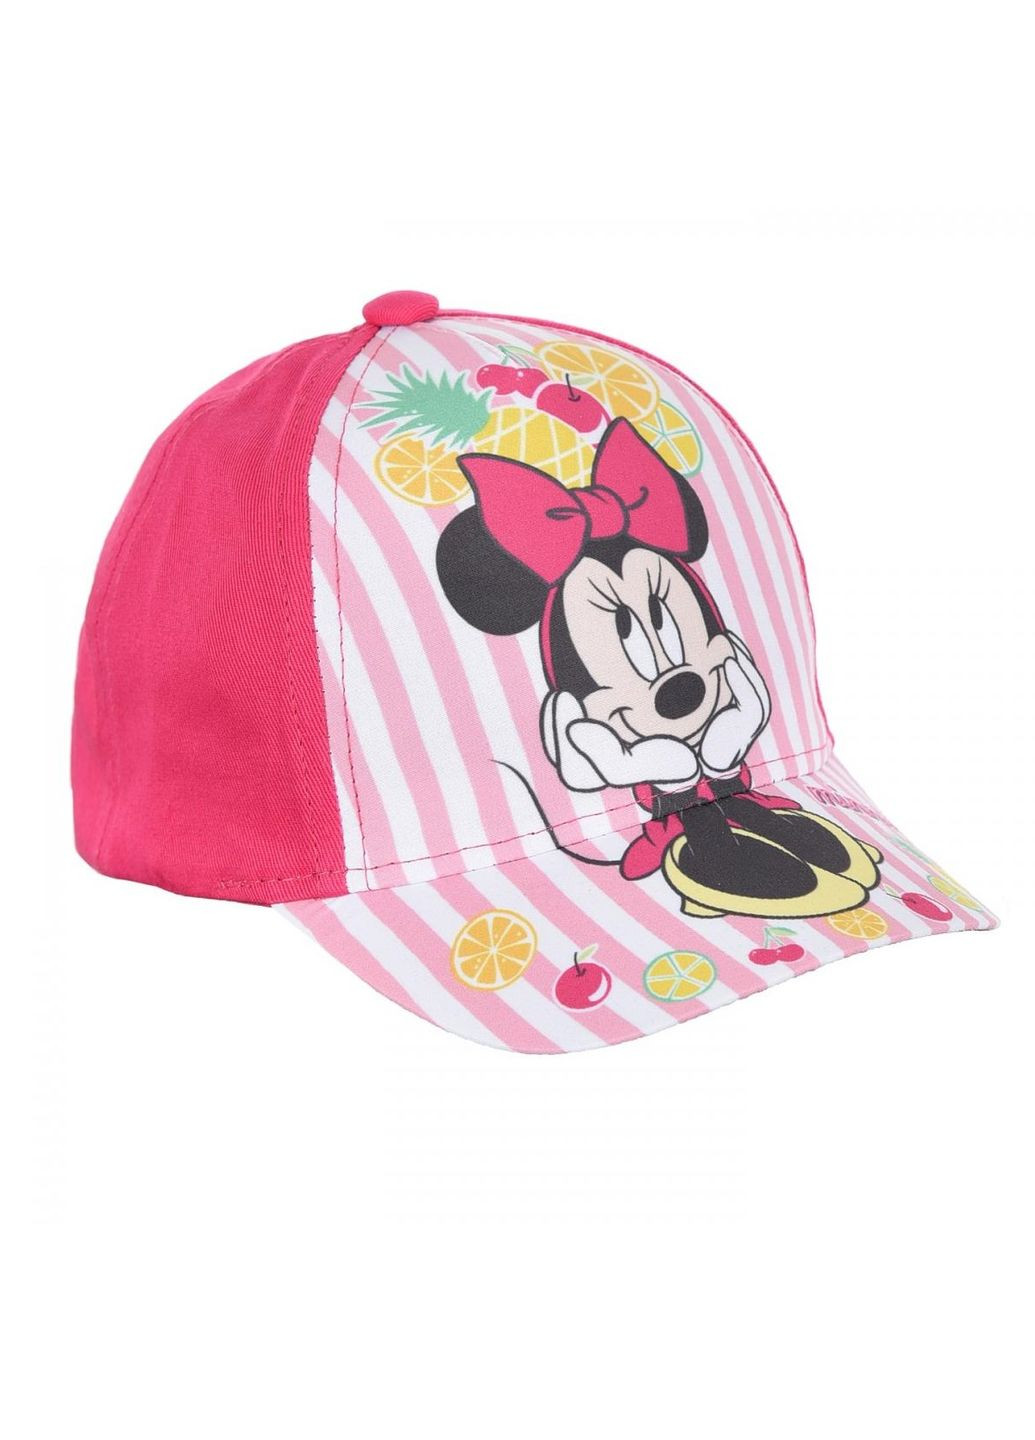 Кепка Minnie Mouse (Минни Маус) UE40982 EU Disney кепка (290252700)